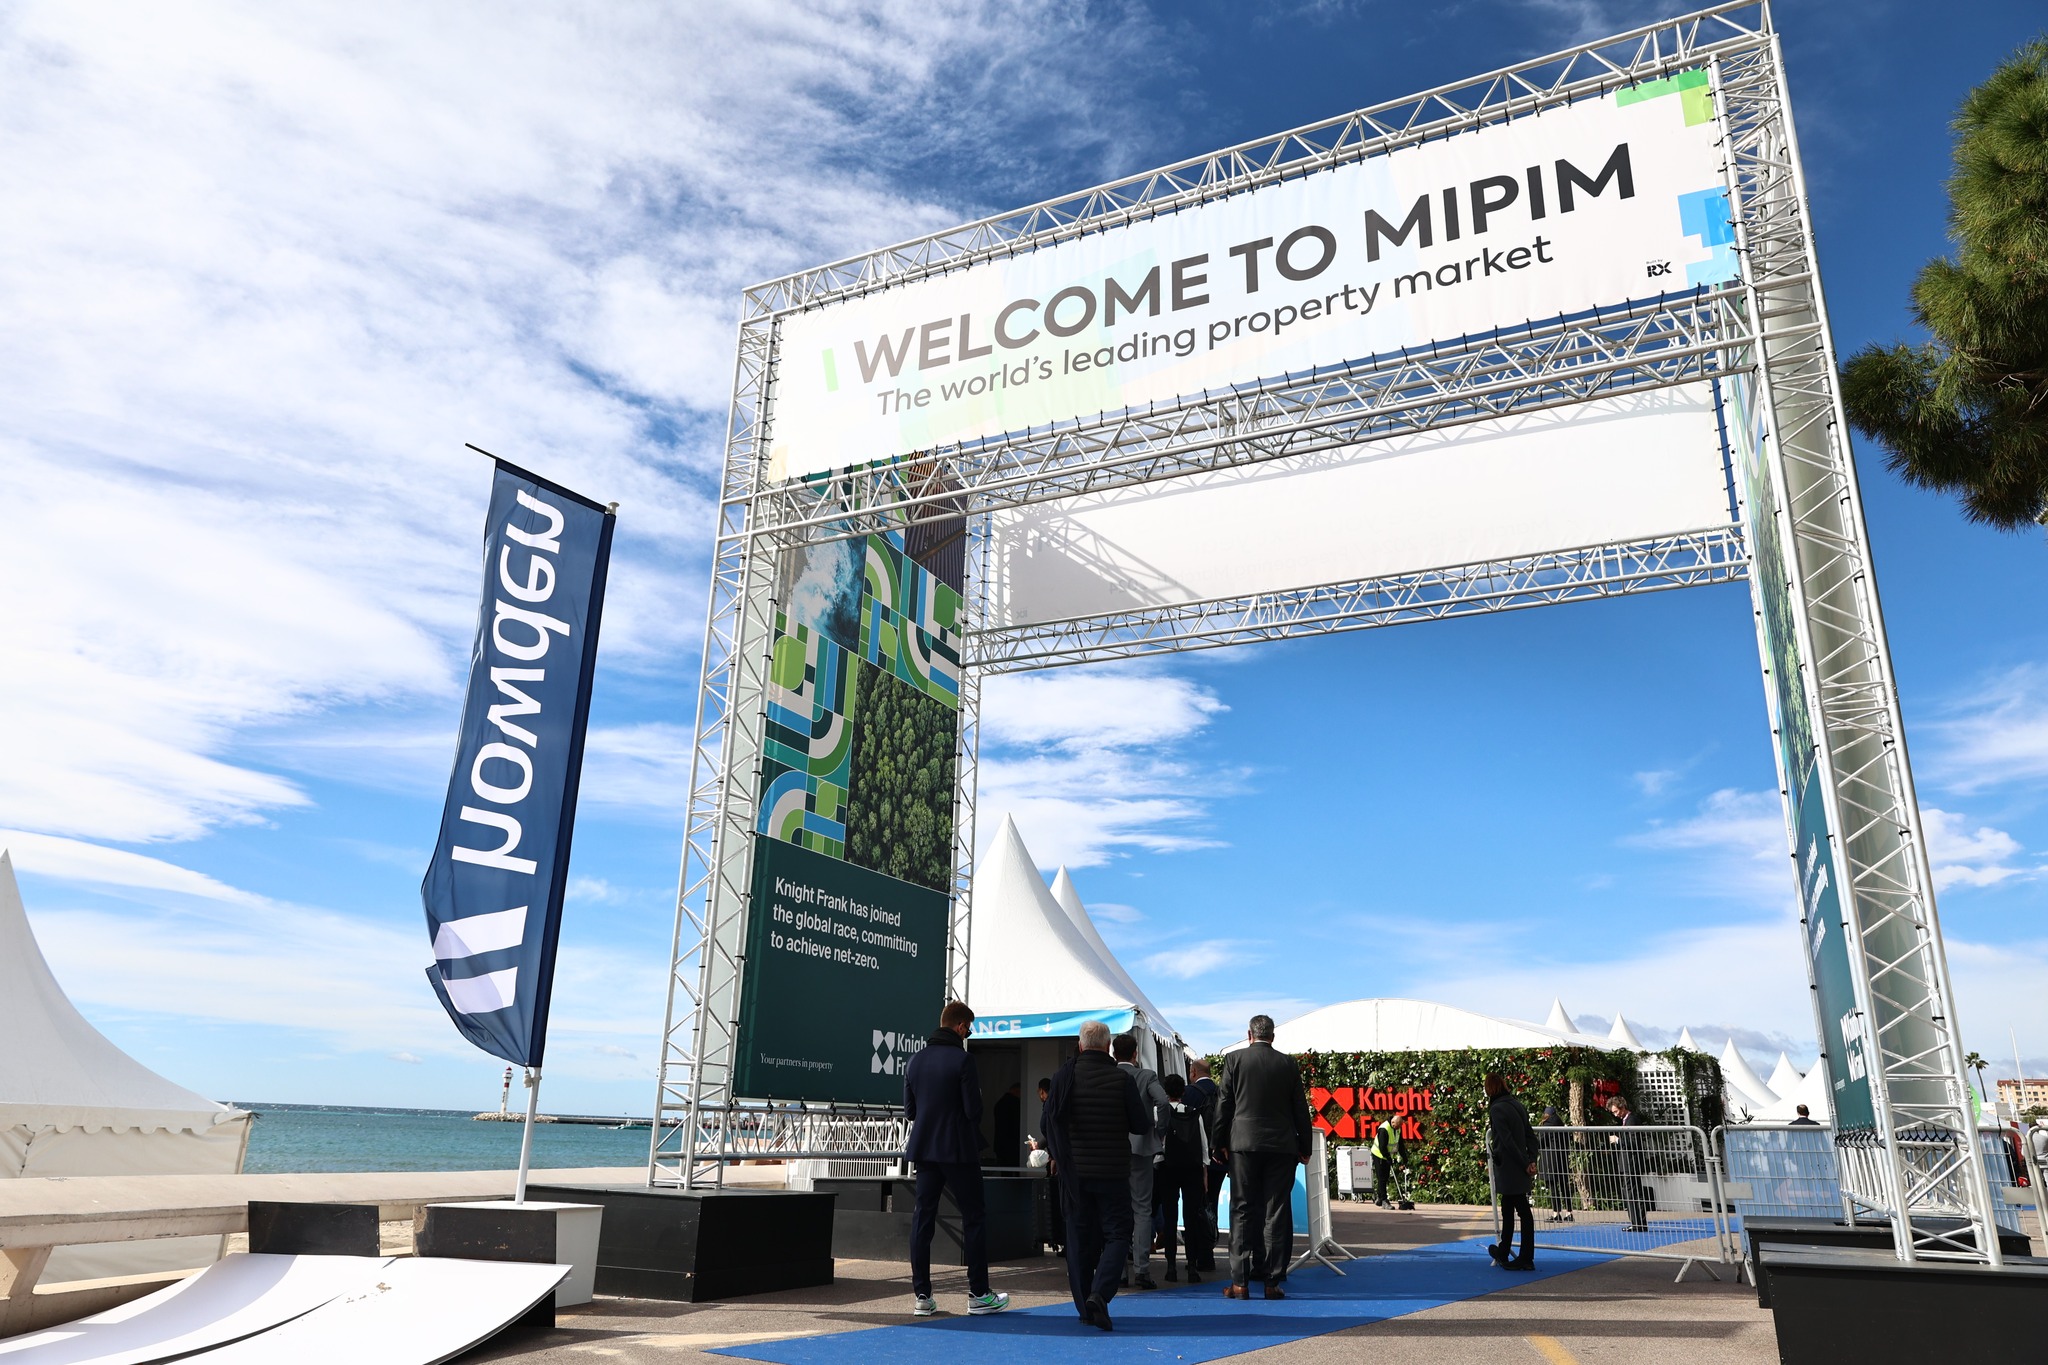 Immobilienmesse MIPIM: Mit dem Potenzial des Landes ausländische Investoren ansprechen